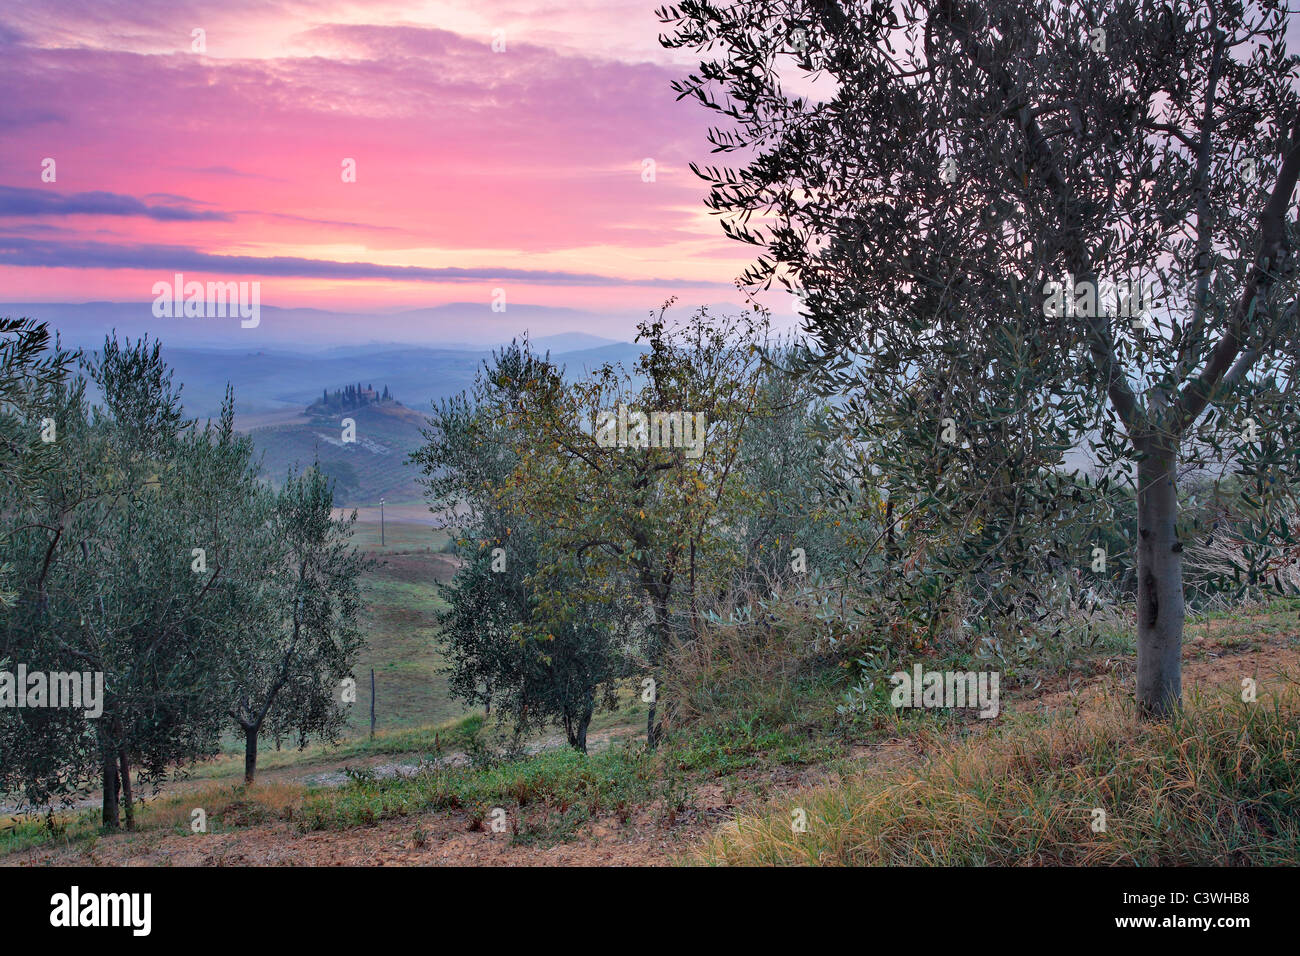 Misty sunrise su una solitaria villa come visto da un uliveto nei pressi di San Quirico d'Orcia in Toscana, Italia Foto Stock